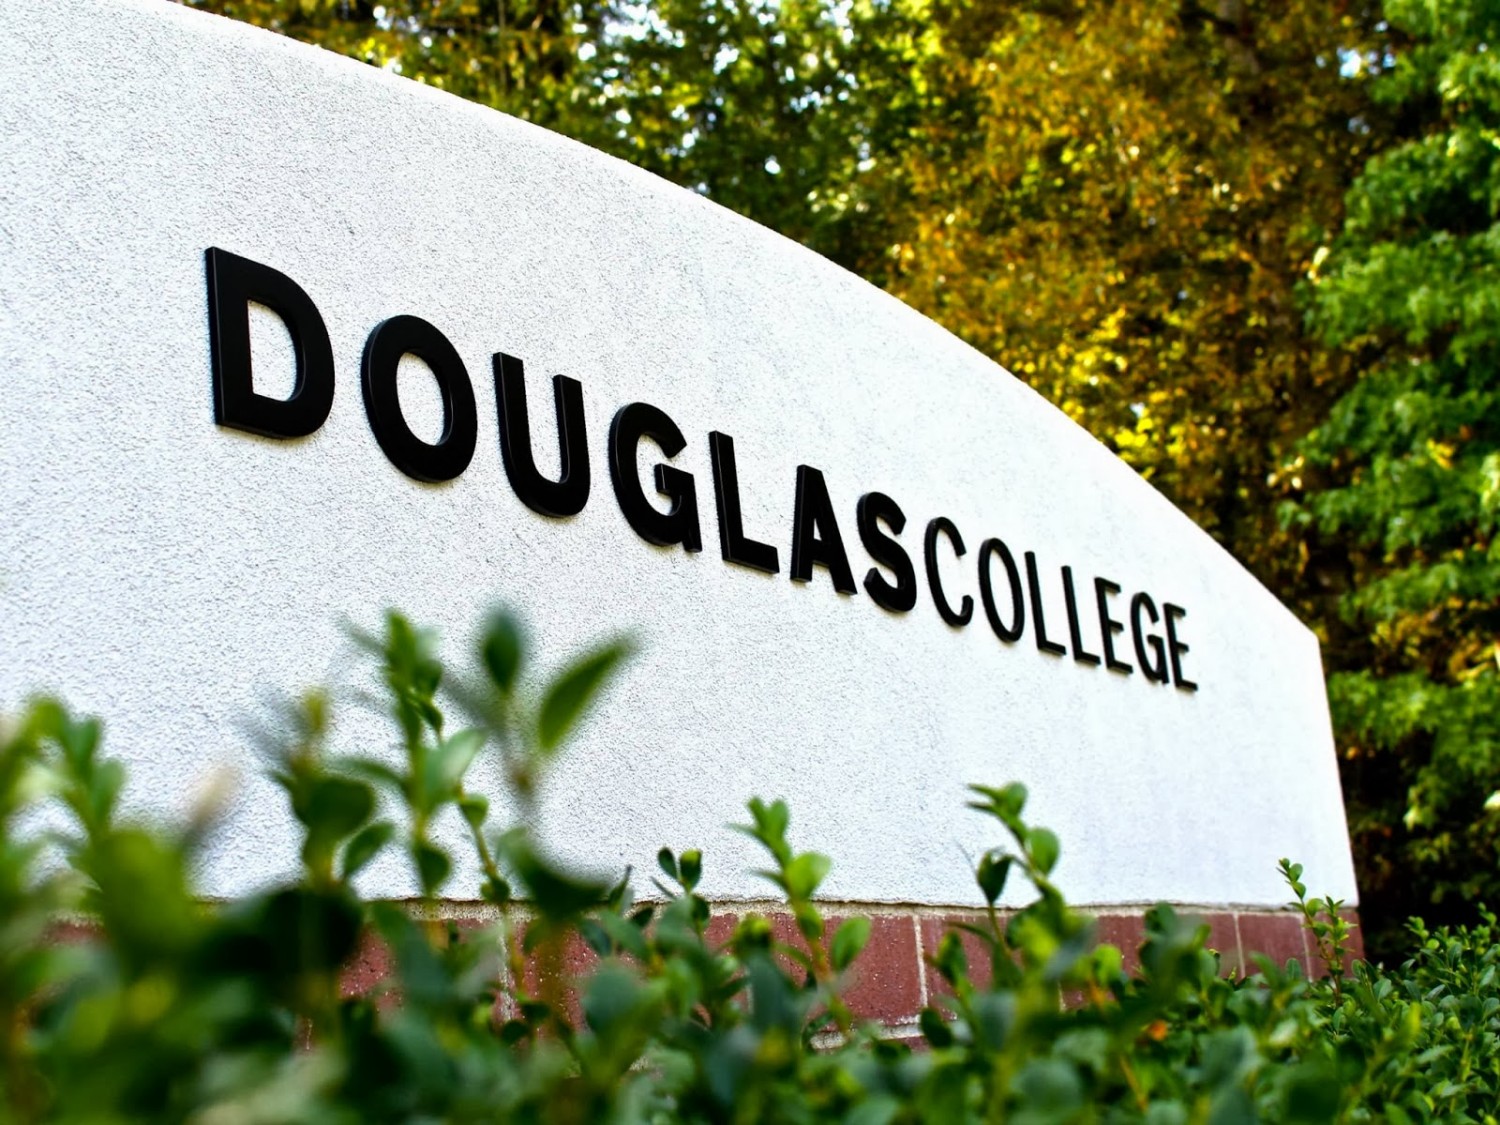 Du học ngành du lịch khách sạn - Hospitality tại cao đẳng Douglas College